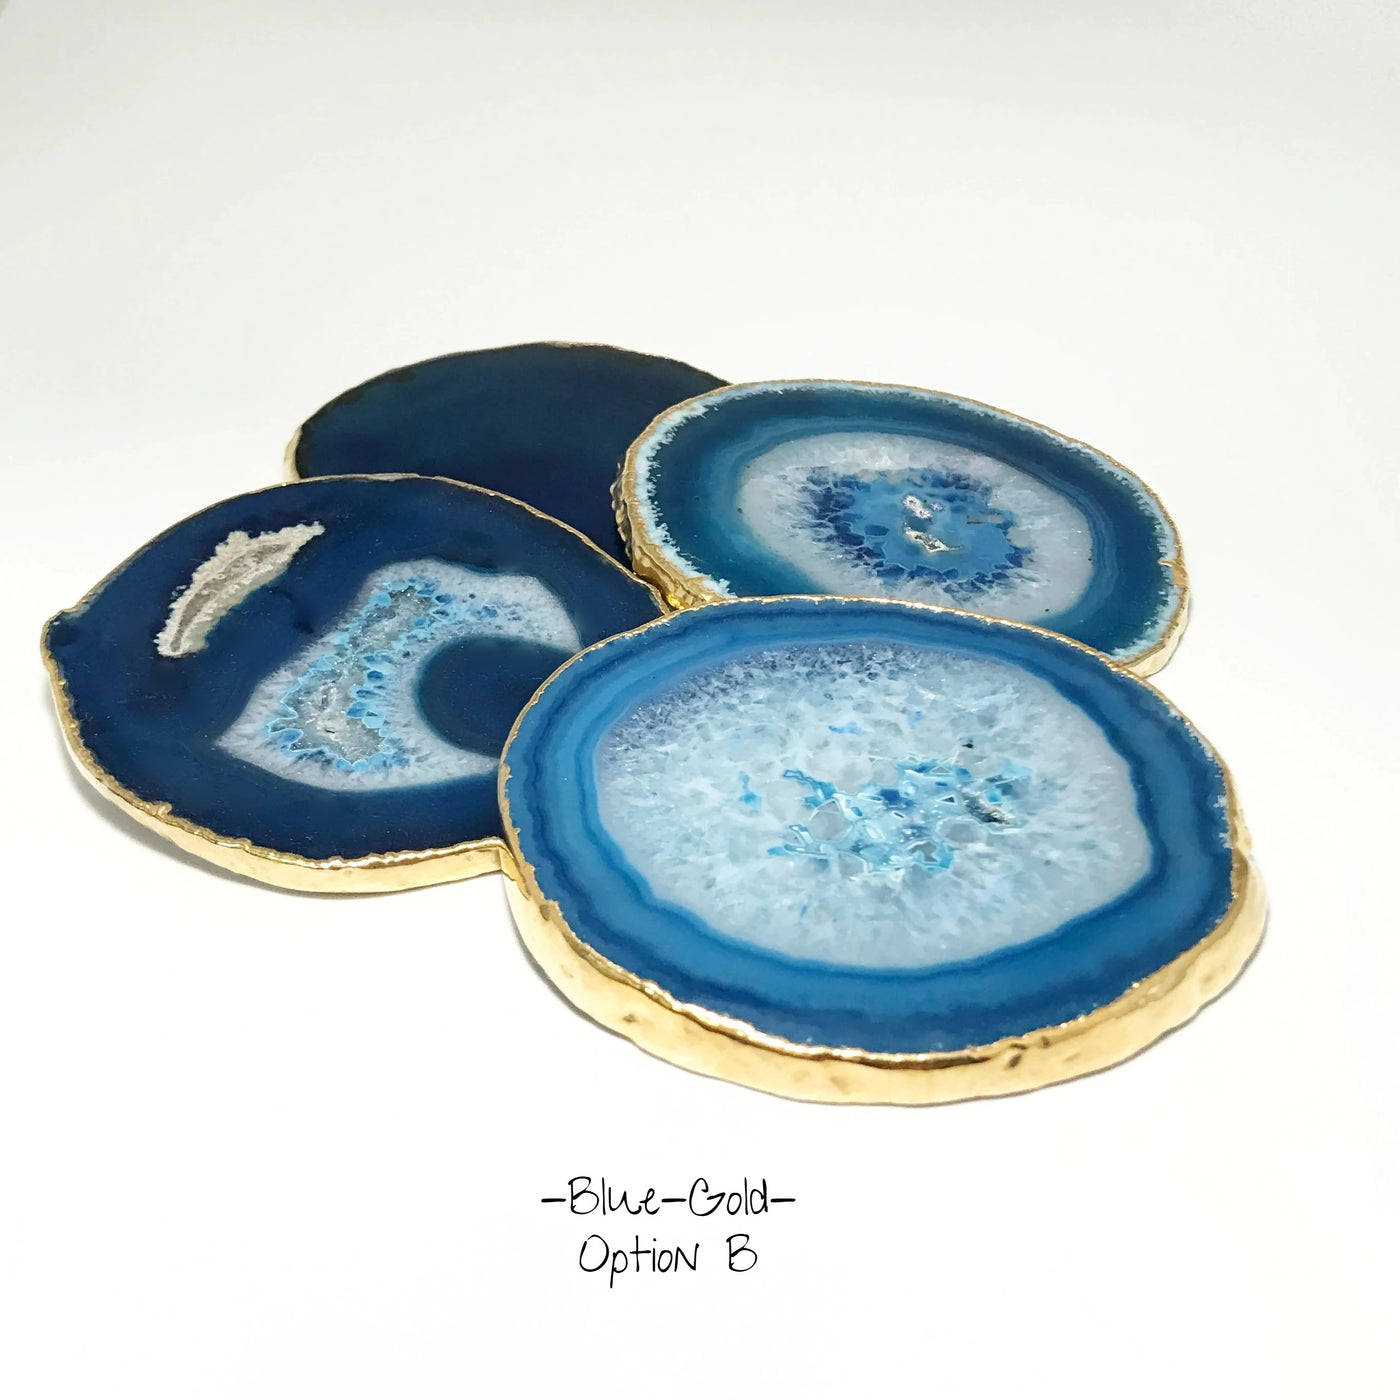 Agate Coasters - Set of 4